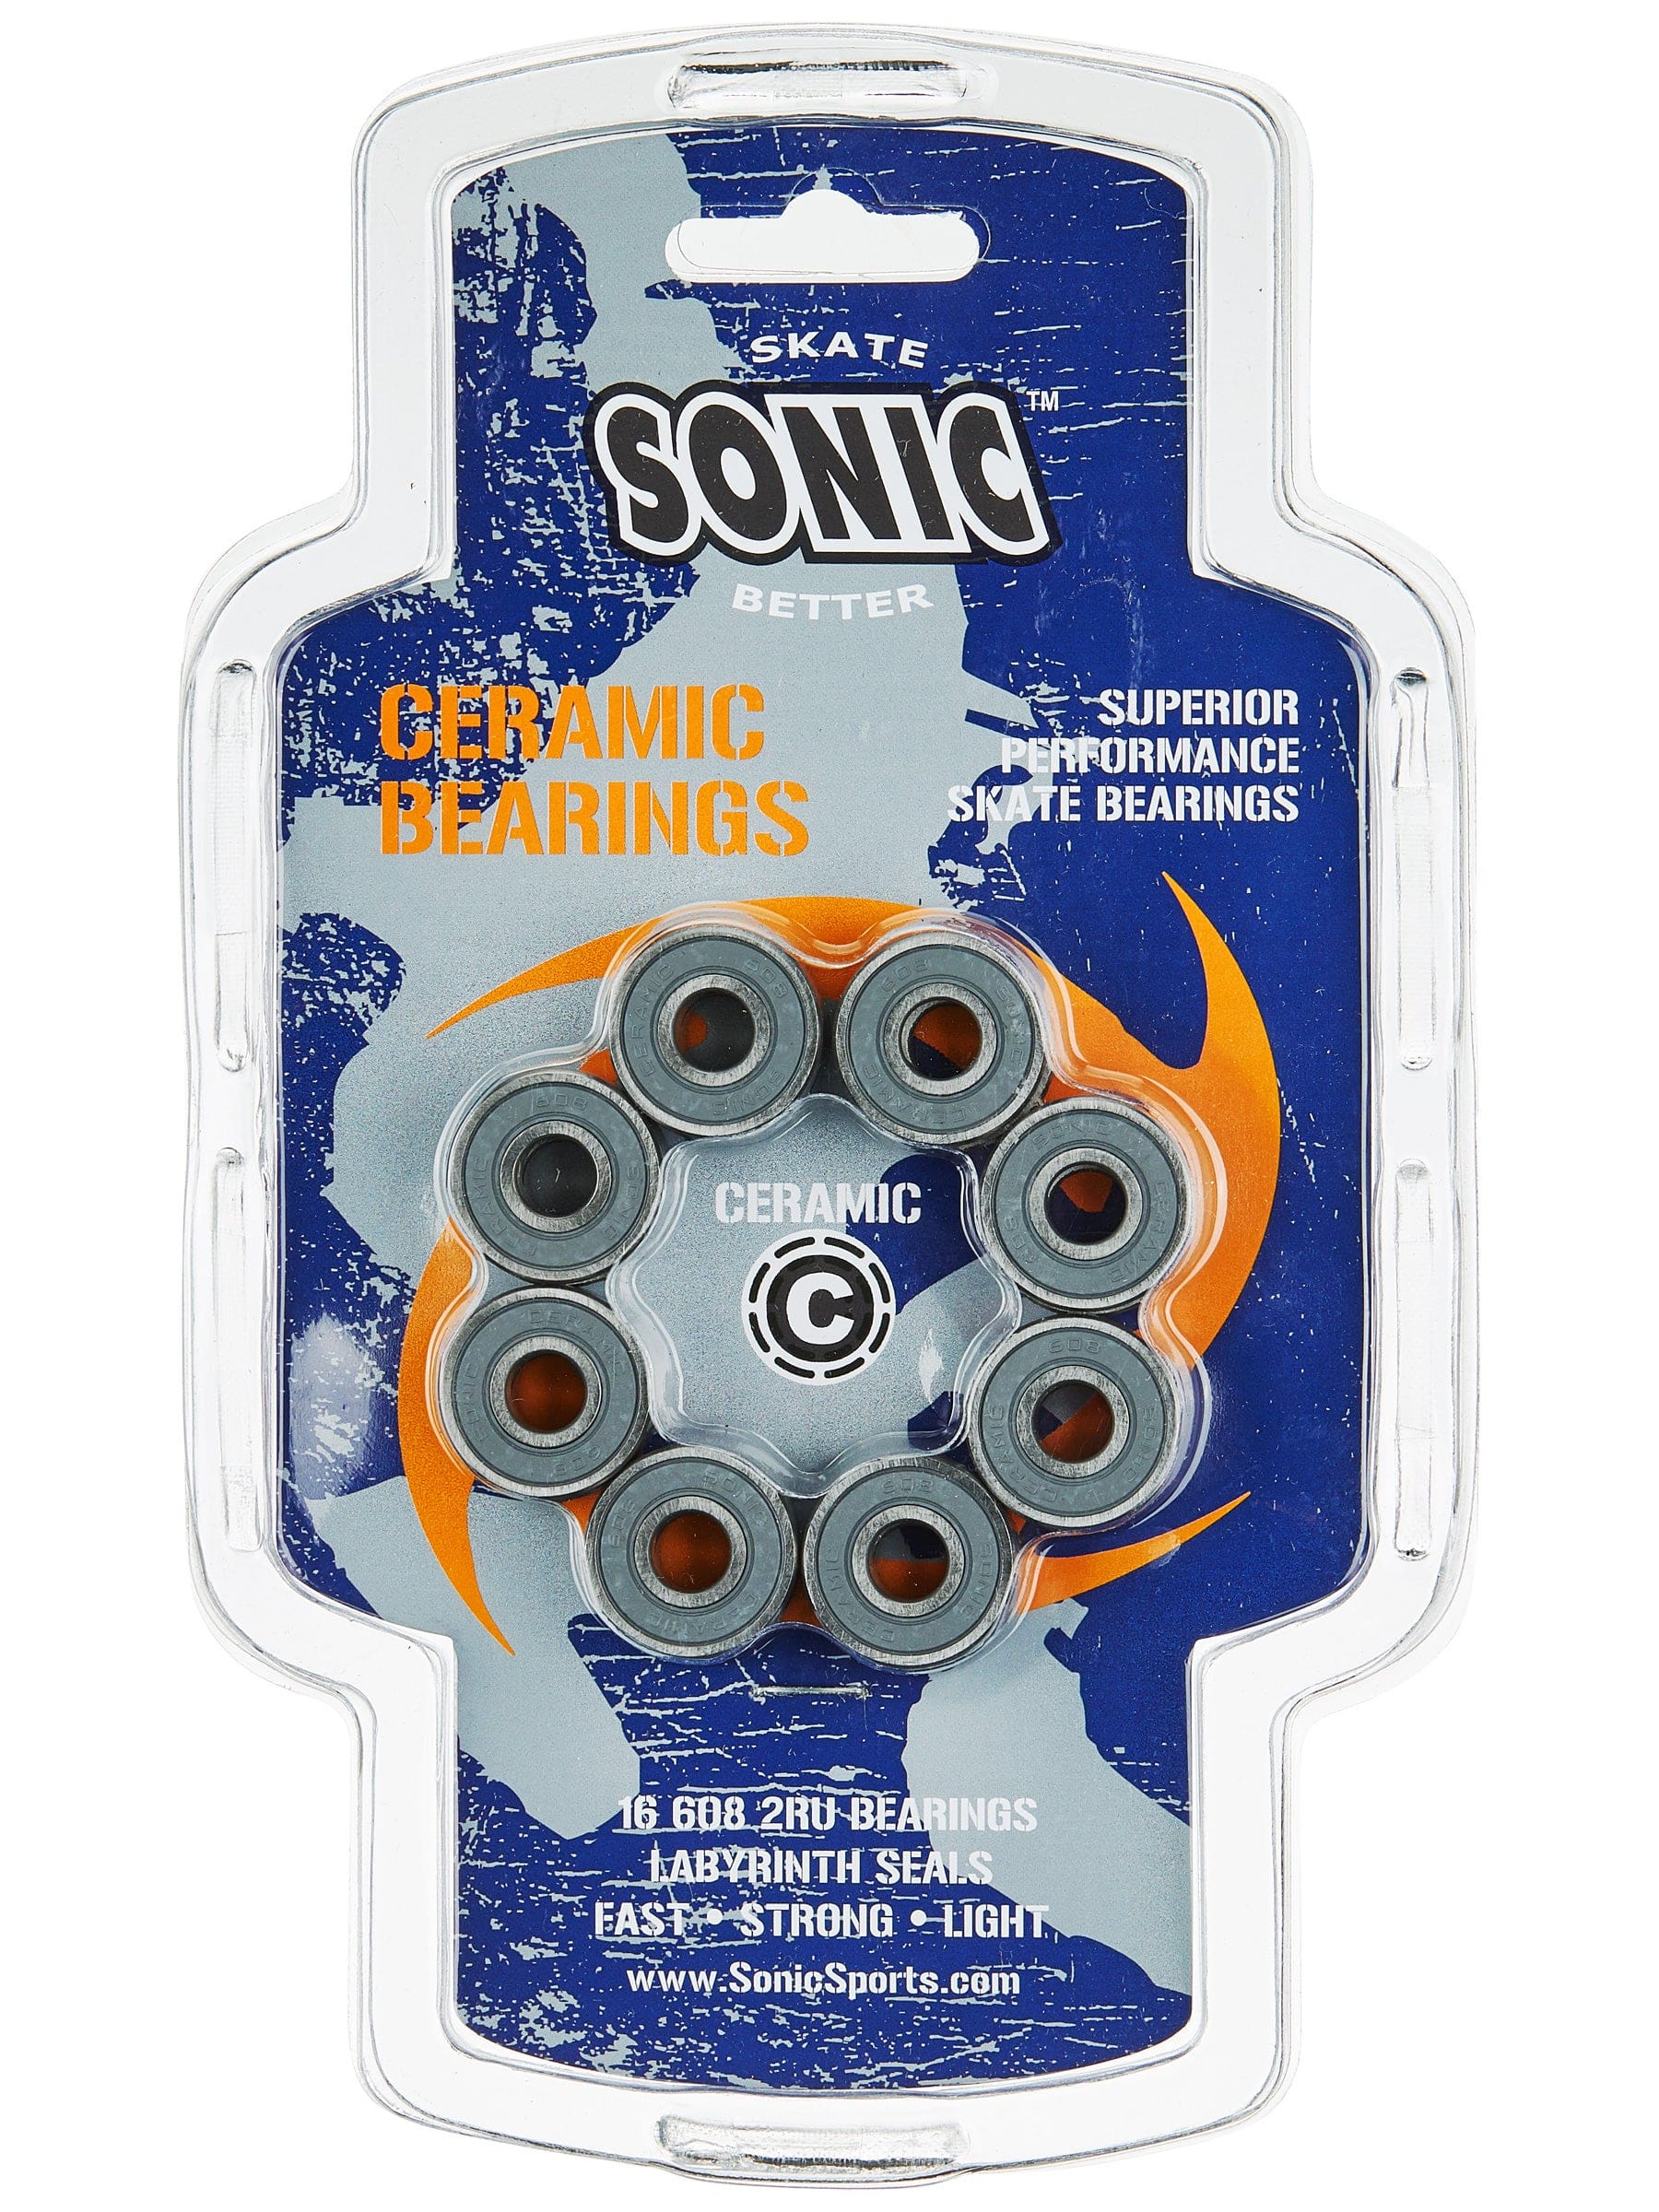 sonic-ceramic-bearings